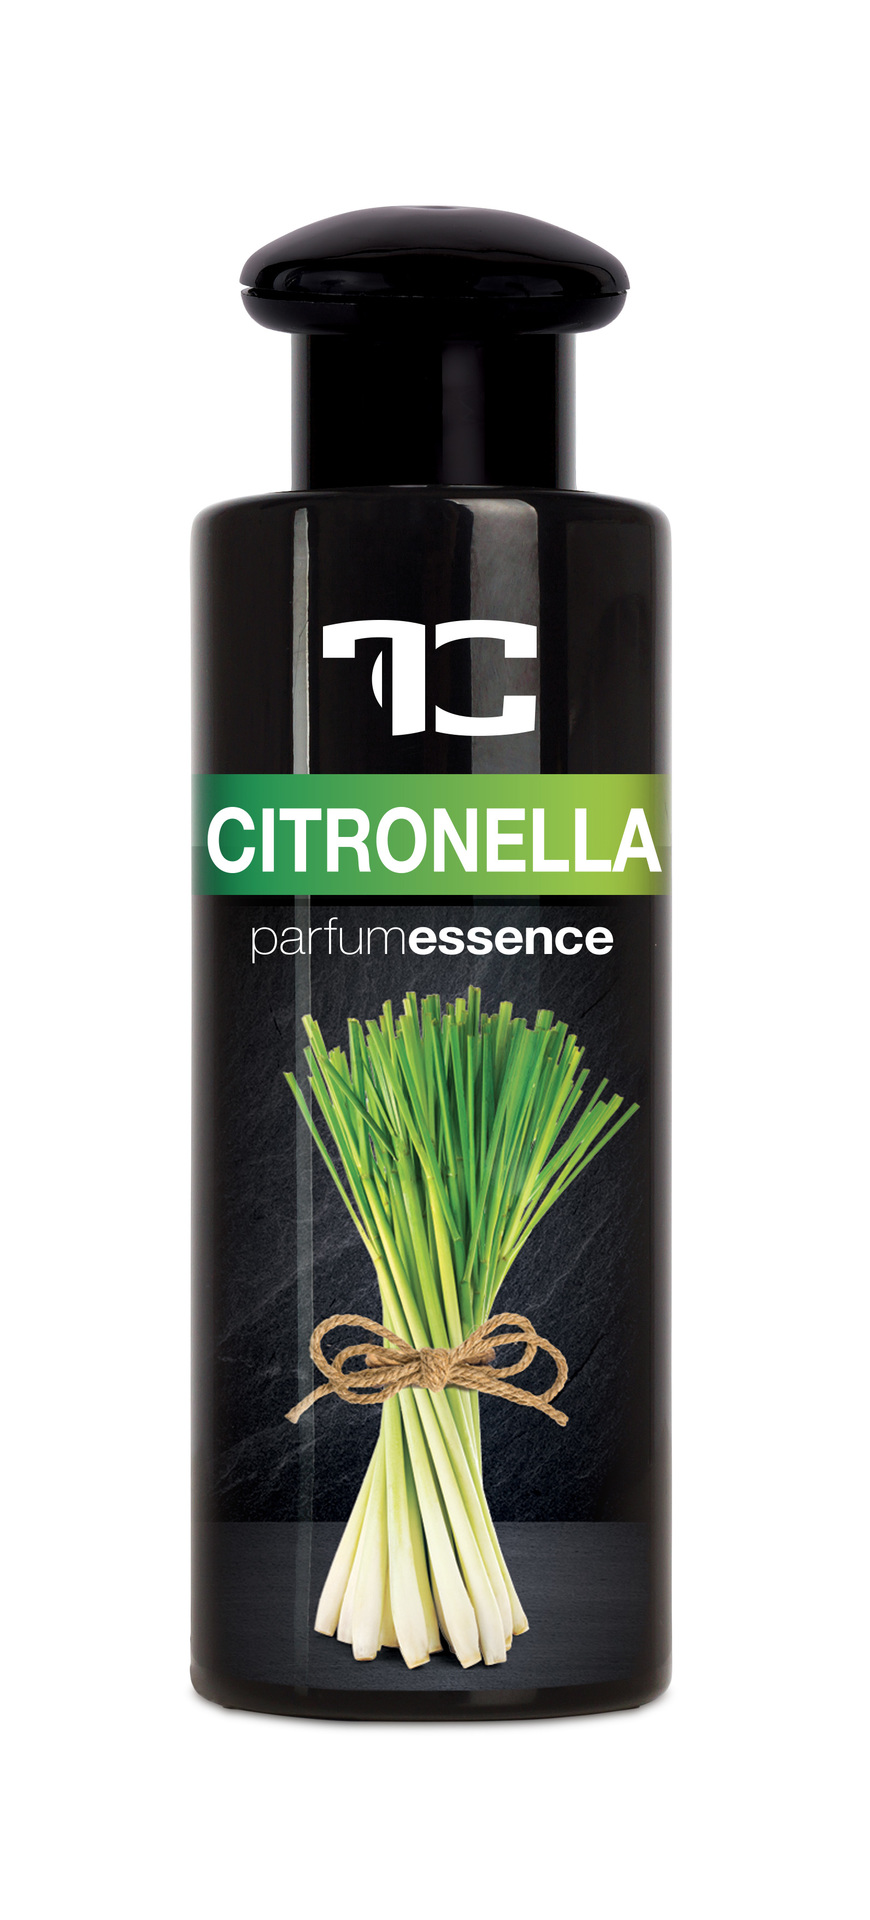 PARFUM ESSENCE CITRONELLA, koncentrovaná, do aromalamp a difuzérů, s obsahem přírodních éterických olejů